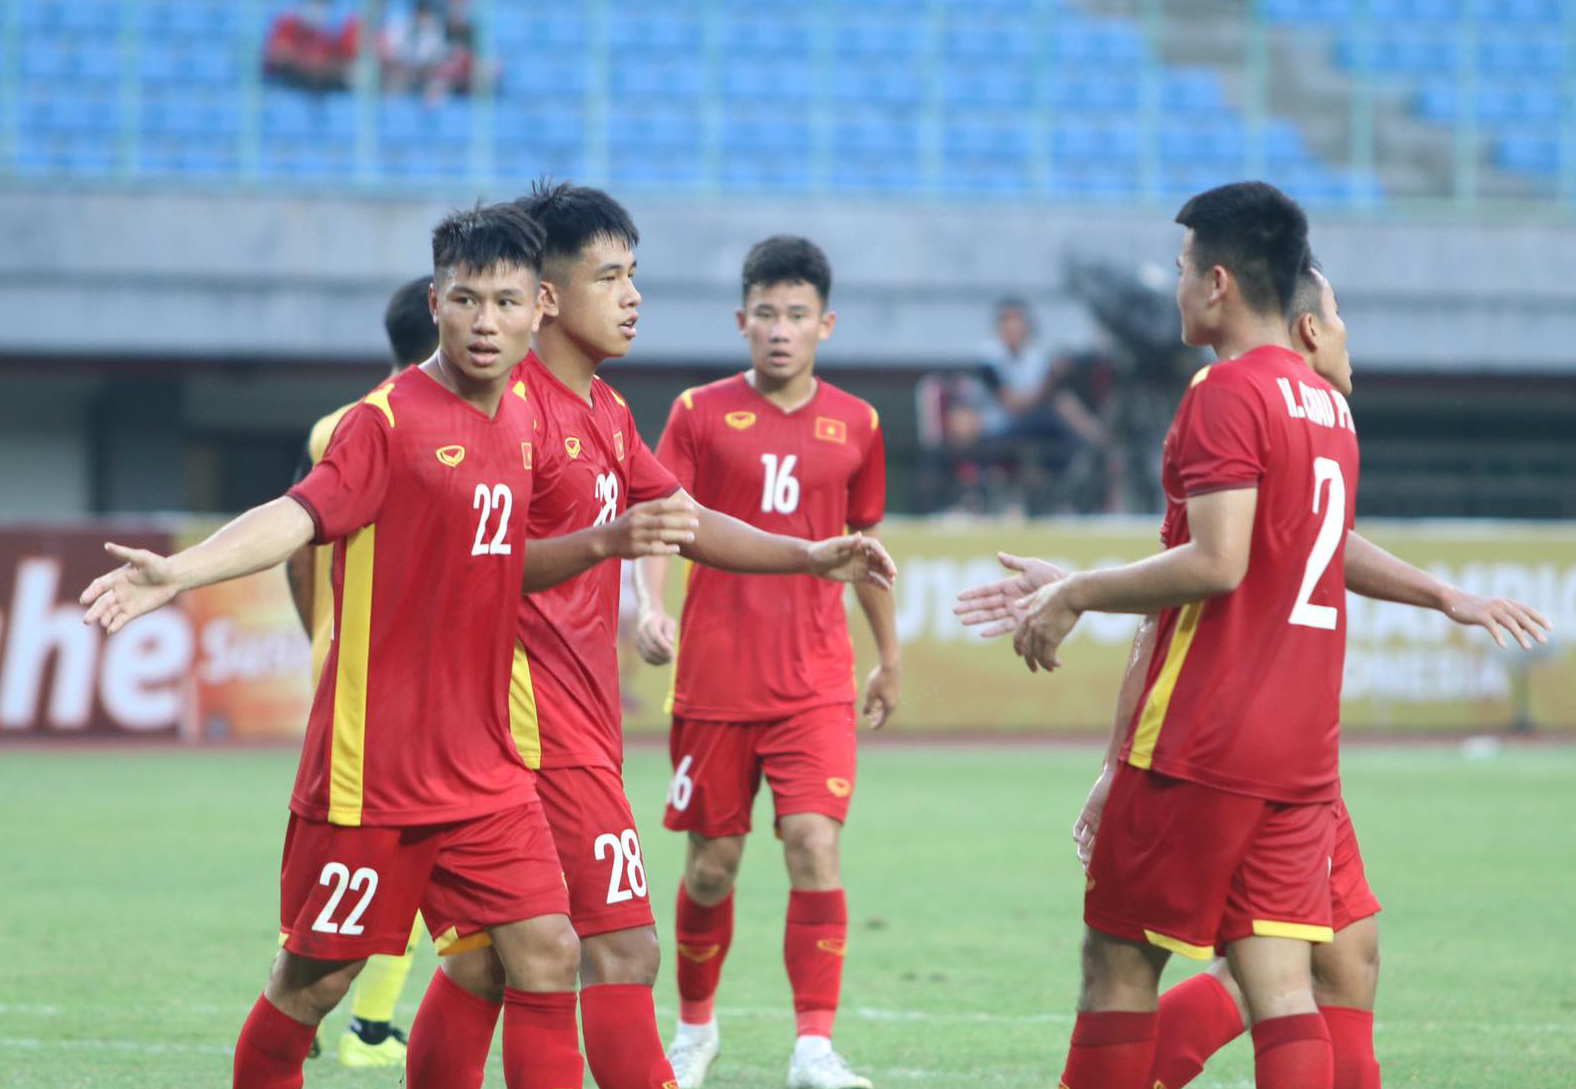 Giản Tân (số 28) ghi bàn thắng thứ 2 cho U19 Việt Nam. Ảnh: H.A